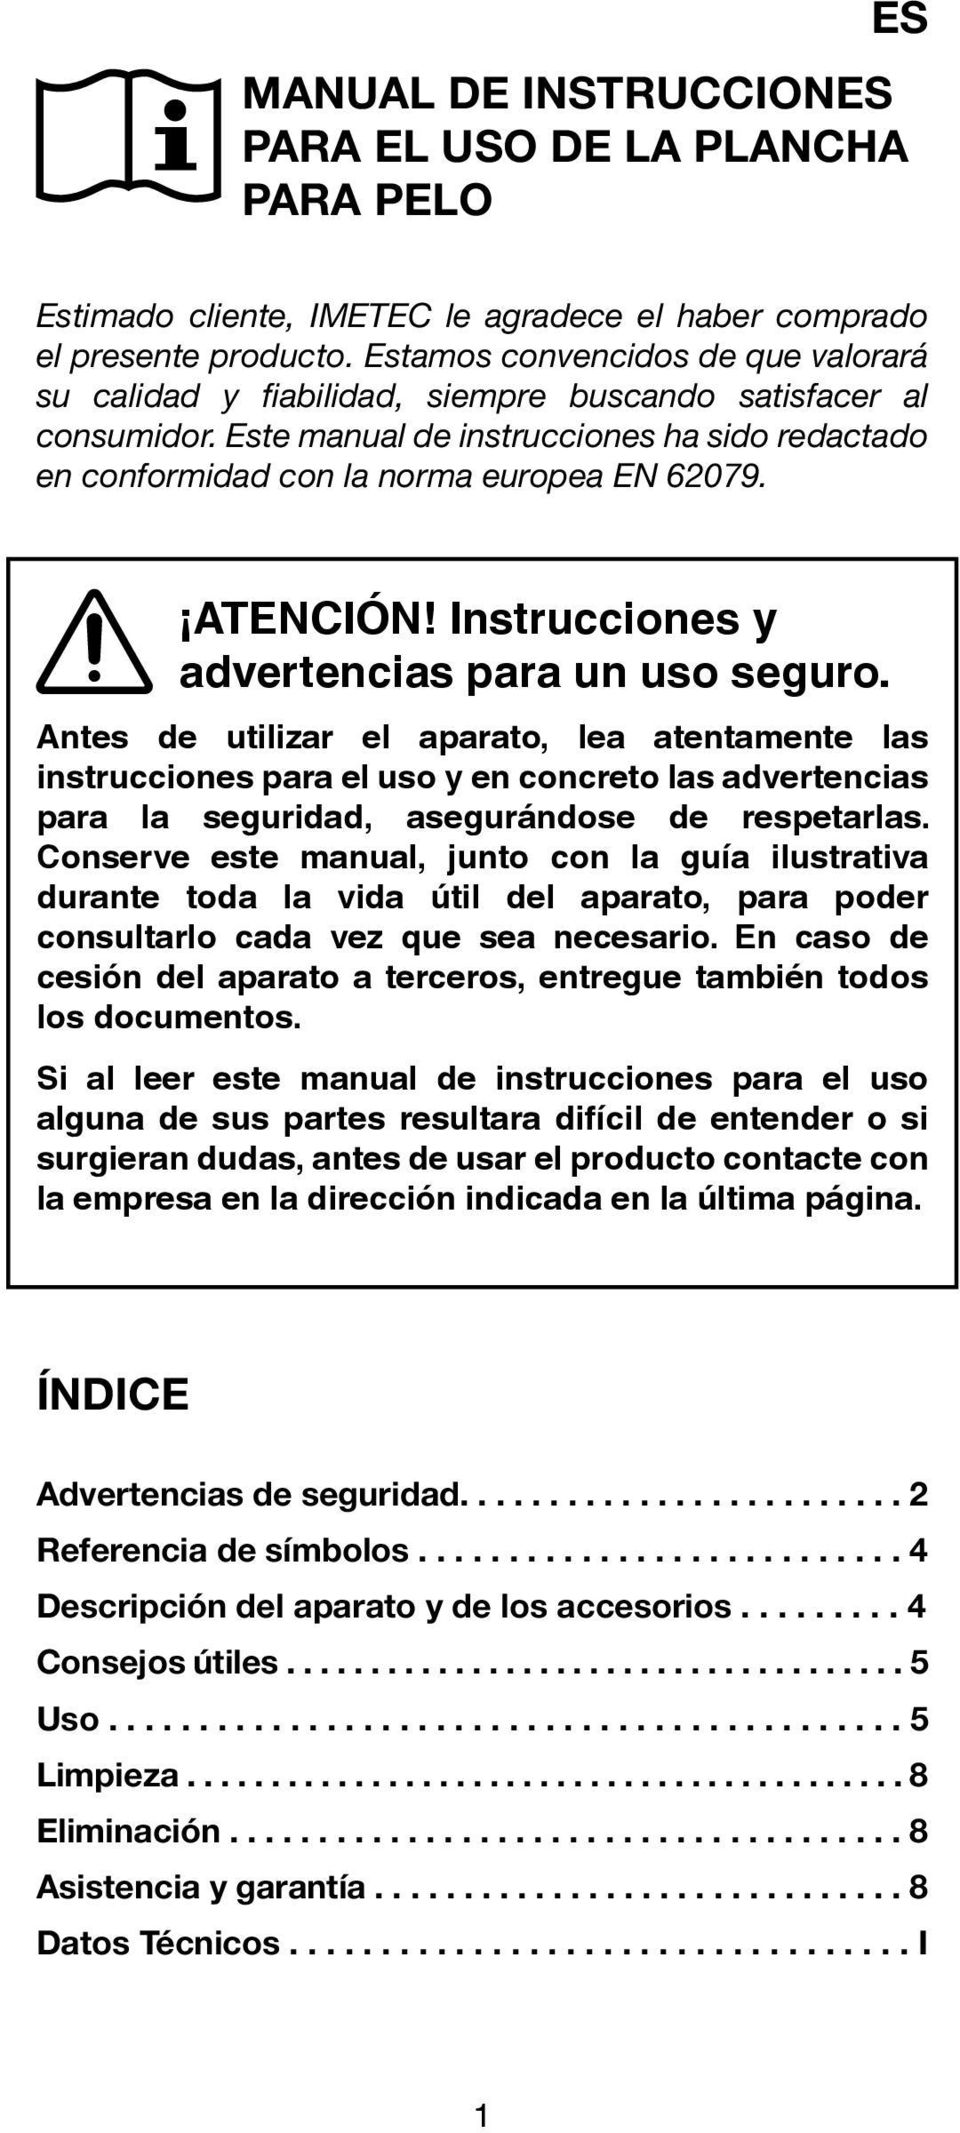 ATENCIÓN! Instrucciones y advertencias para un uso seguro.